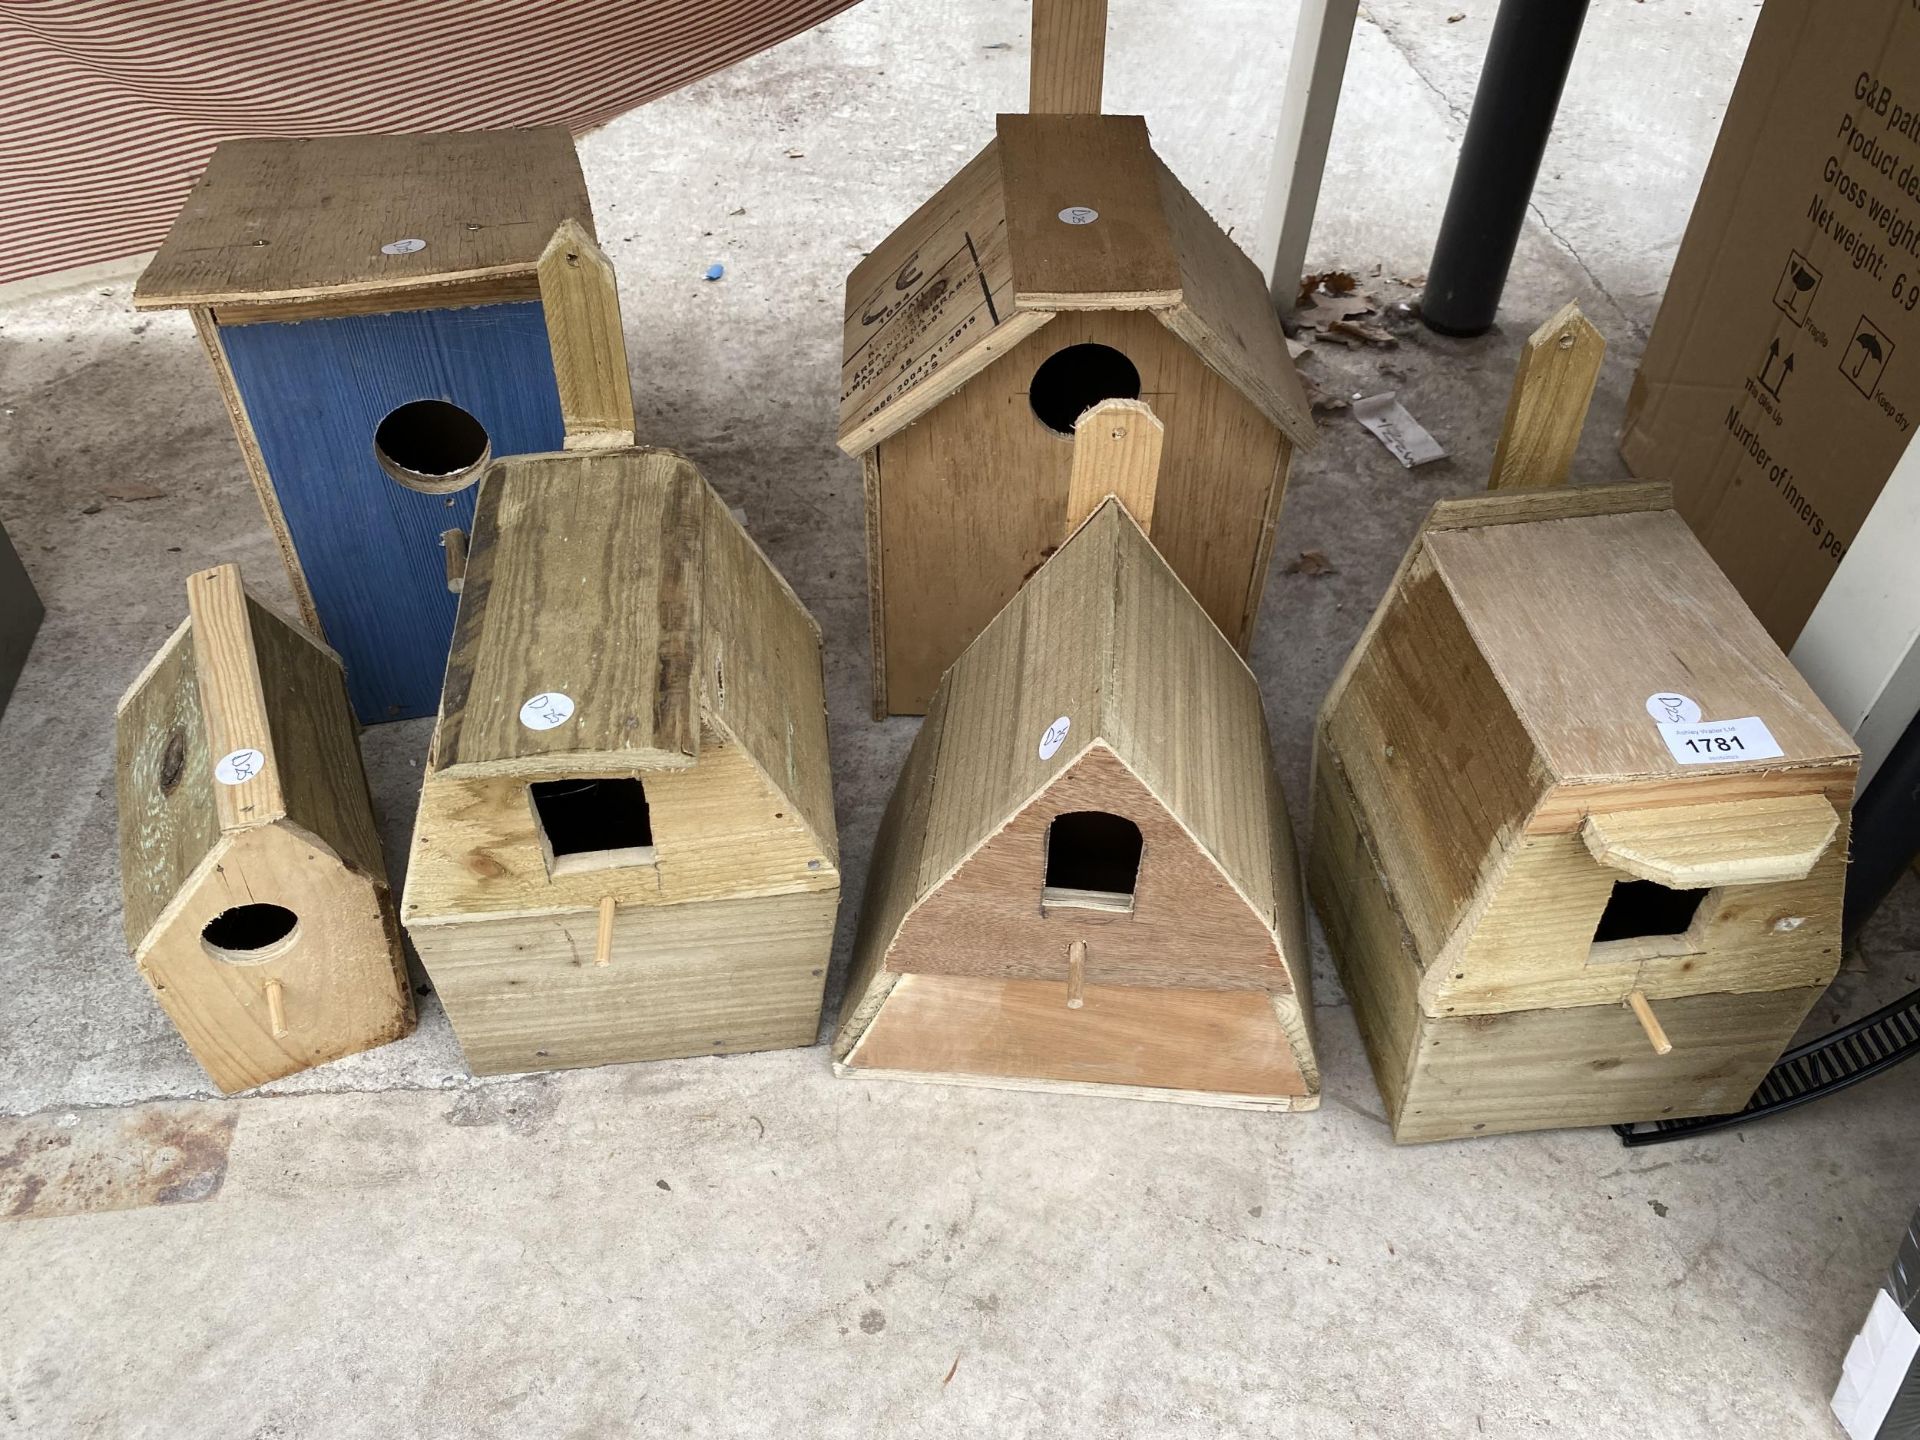 SIX VARIOUS WOODEN BIRD BOXES